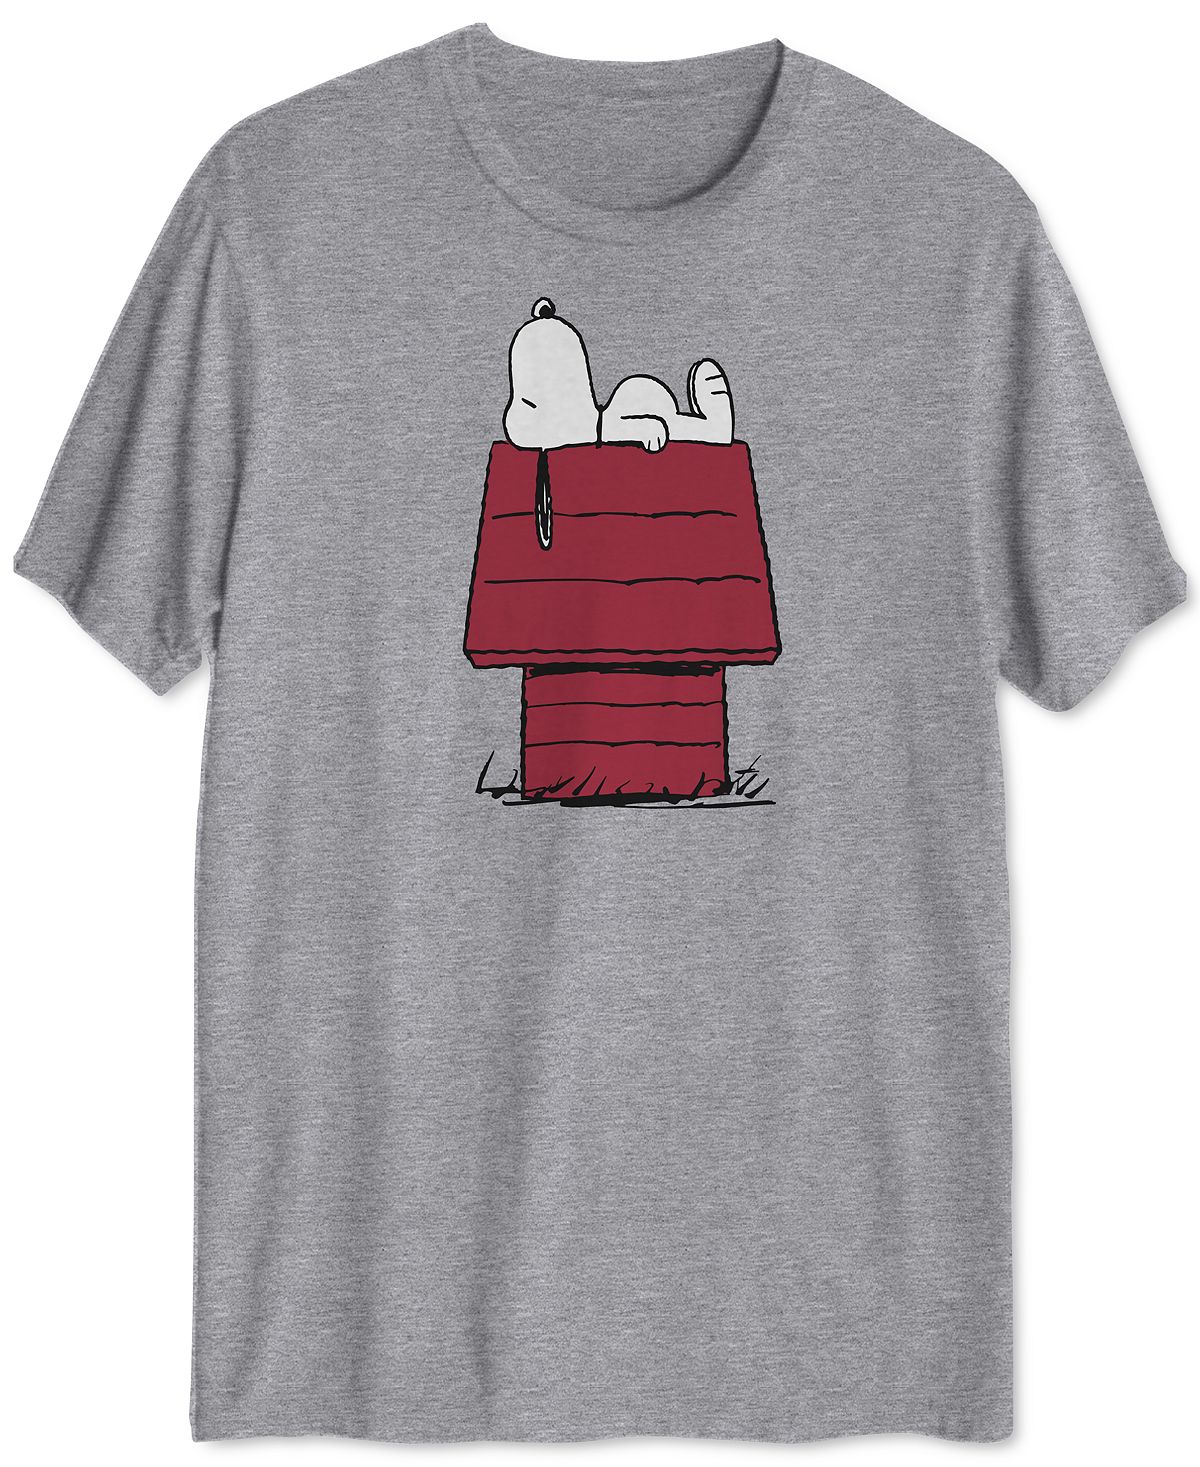 Мужская футболка с рисунком snoopy doghouse Hybrid, серый мужская футболка с рисунком микки hybrid серый